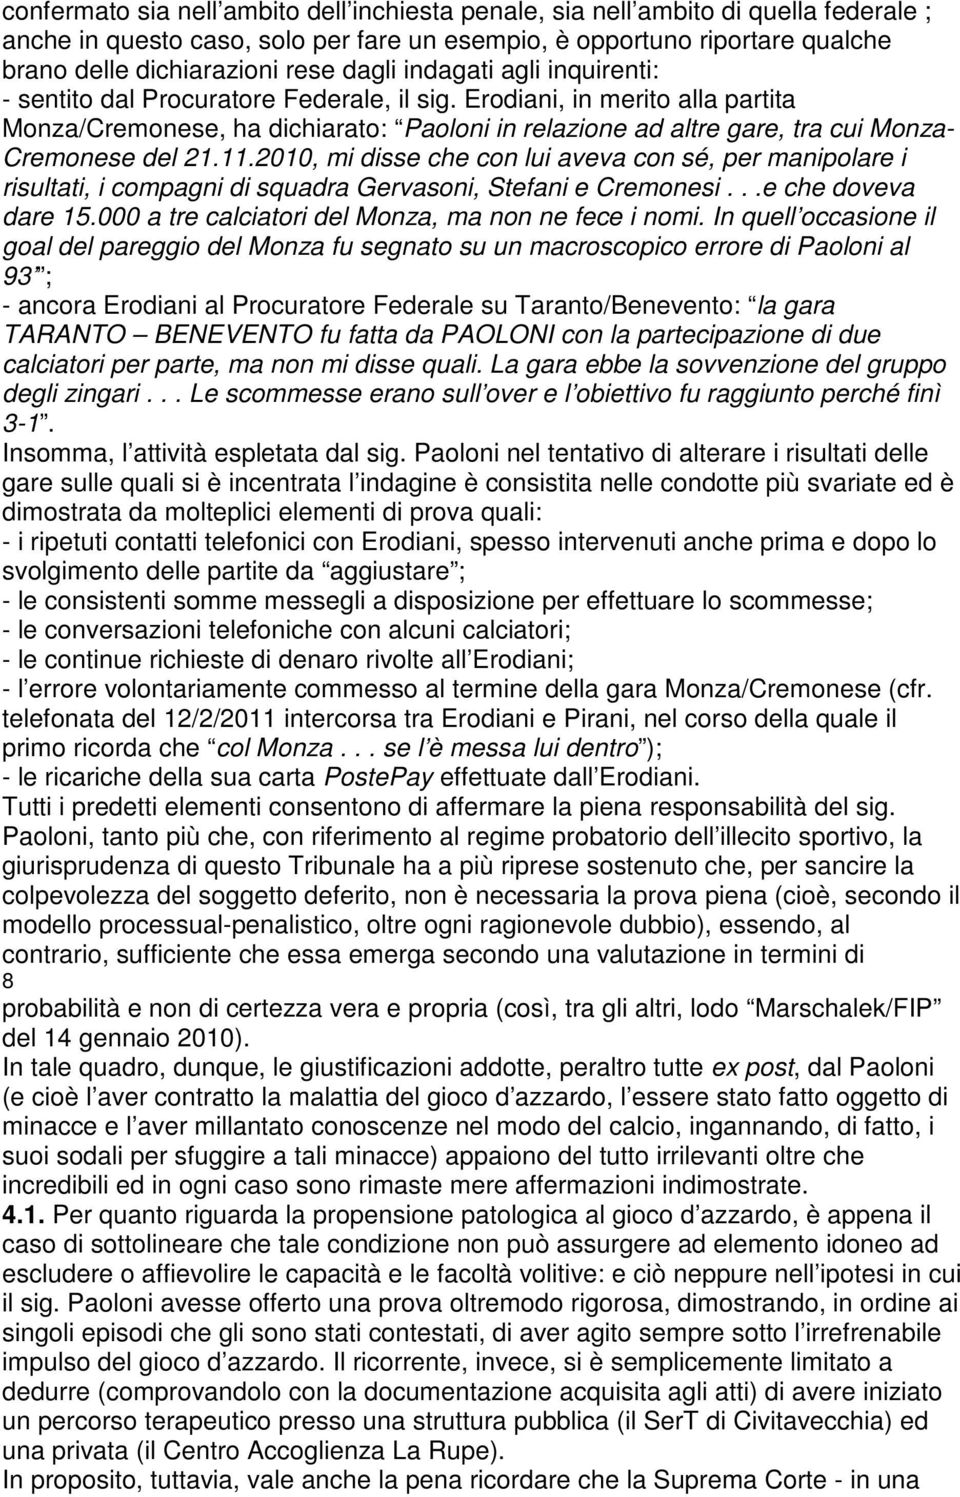 Erodiani, in merito alla partita Monza/Cremonese, ha dichiarato: Paoloni in relazione ad altre gare, tra cui Monza- Cremonese del 21.11.